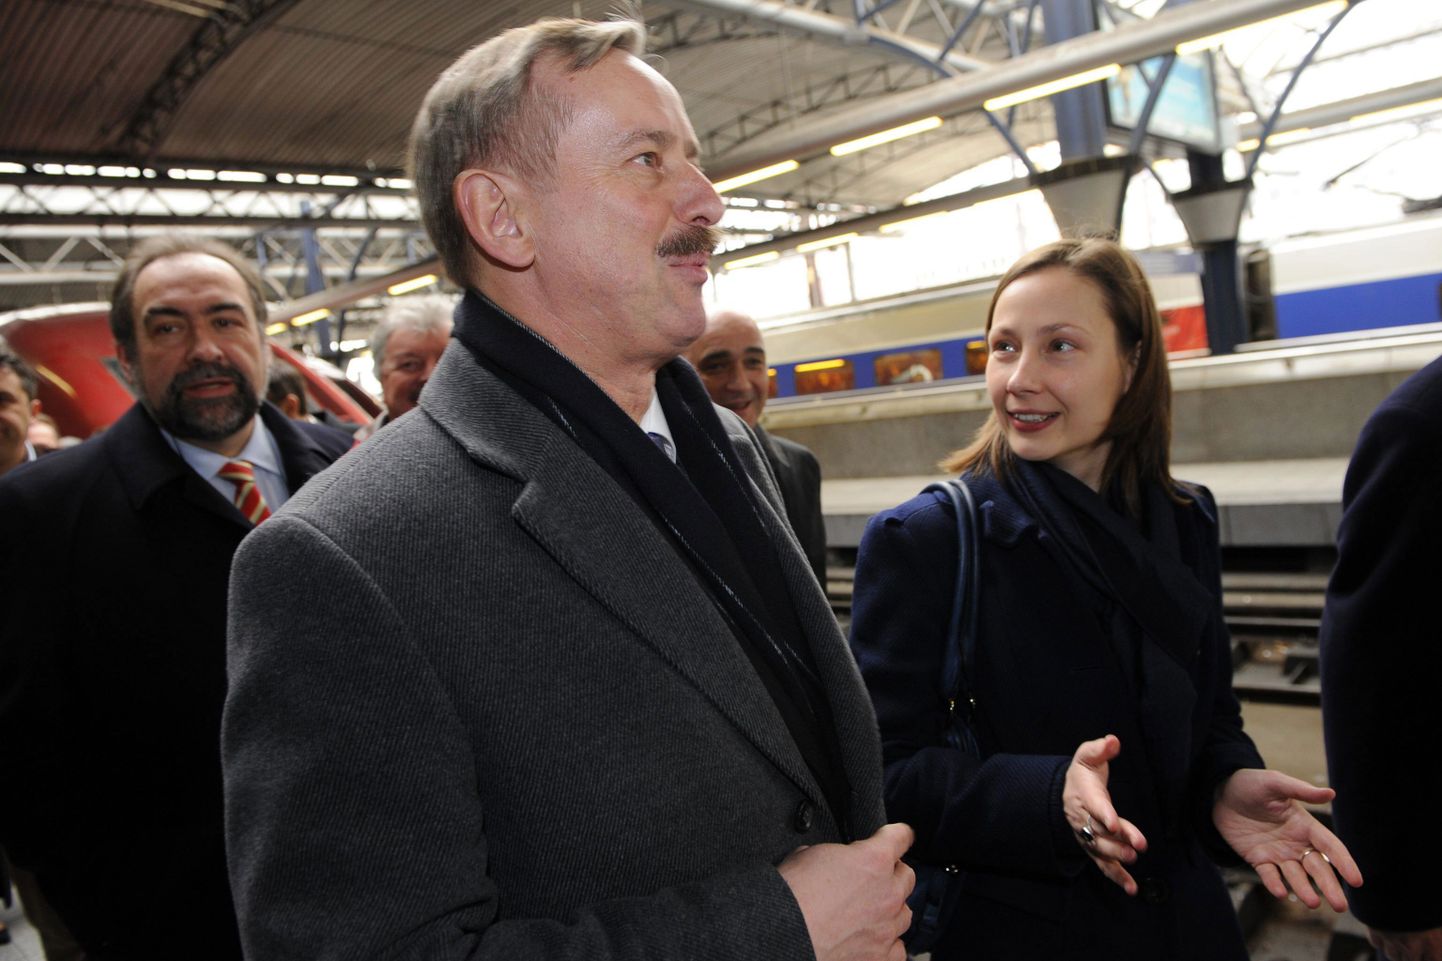 Tulevane Euroopa transpordivolinik Siim Kallas elab teemasse sisse: läinud nädalal avas ta Brüsselis uue kiirrongiliini Antwerpenist Belgia-Hollandi piirini. Kallase vasakul käel on Belgia avaliku teenistuse ja riigiettevõtete minister Inge Vervotten.